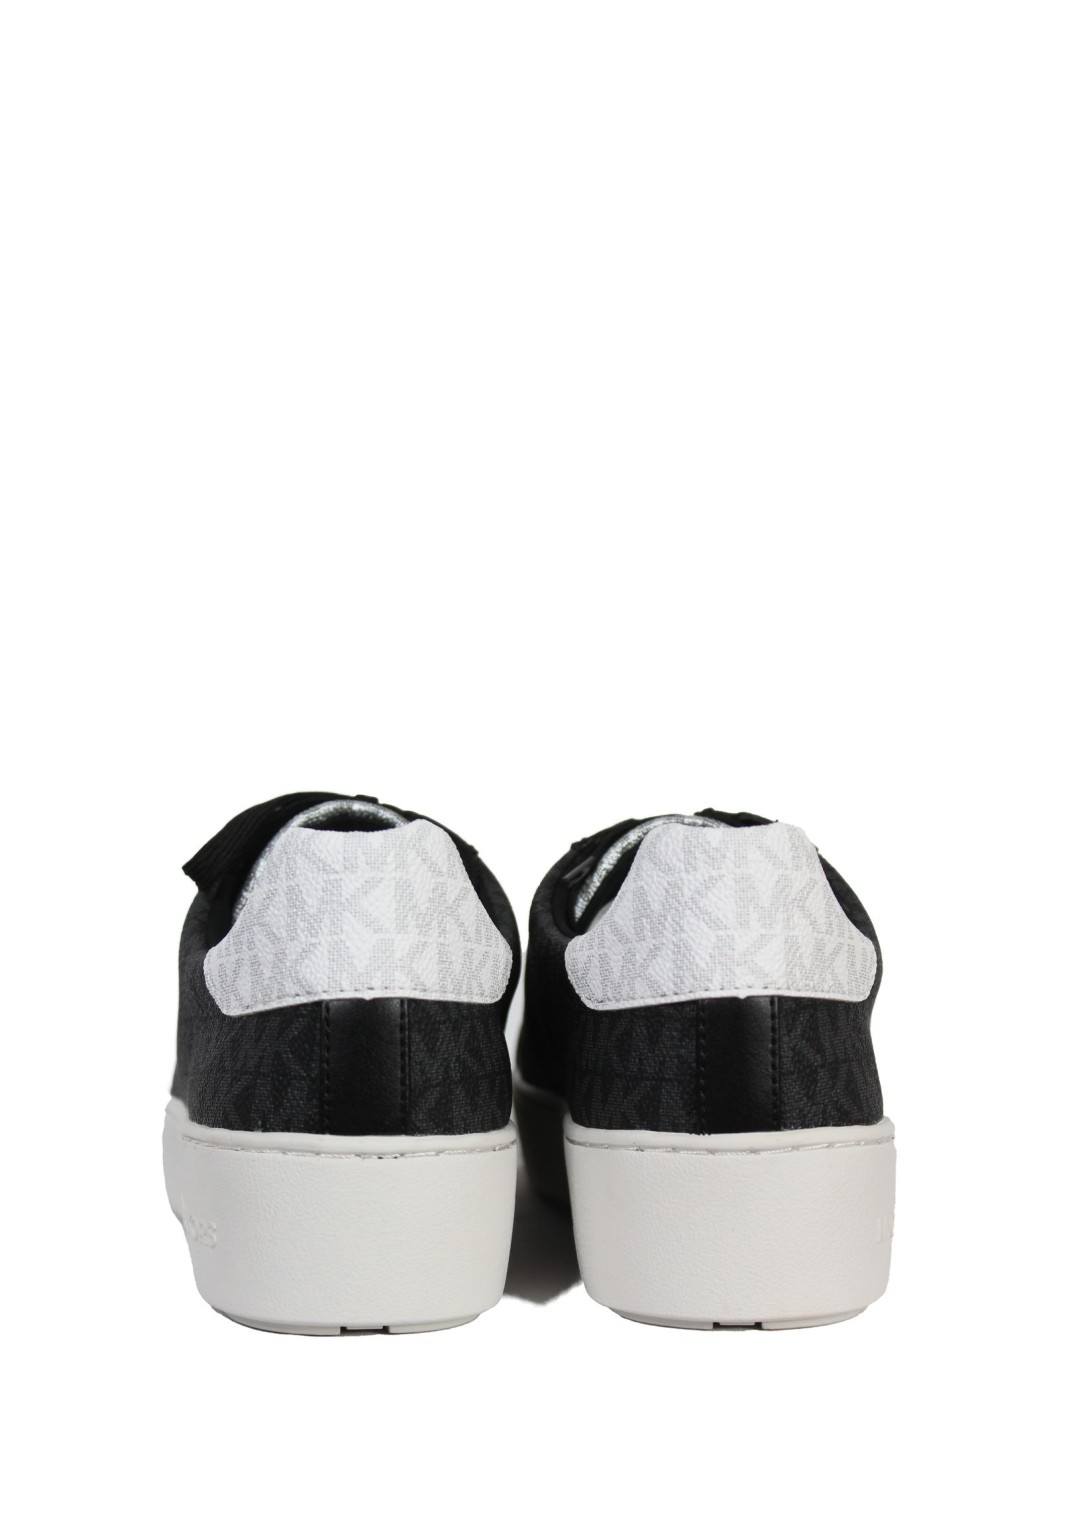 Michael Kors - Sneaker Logata - Donna - 4950POFS2B